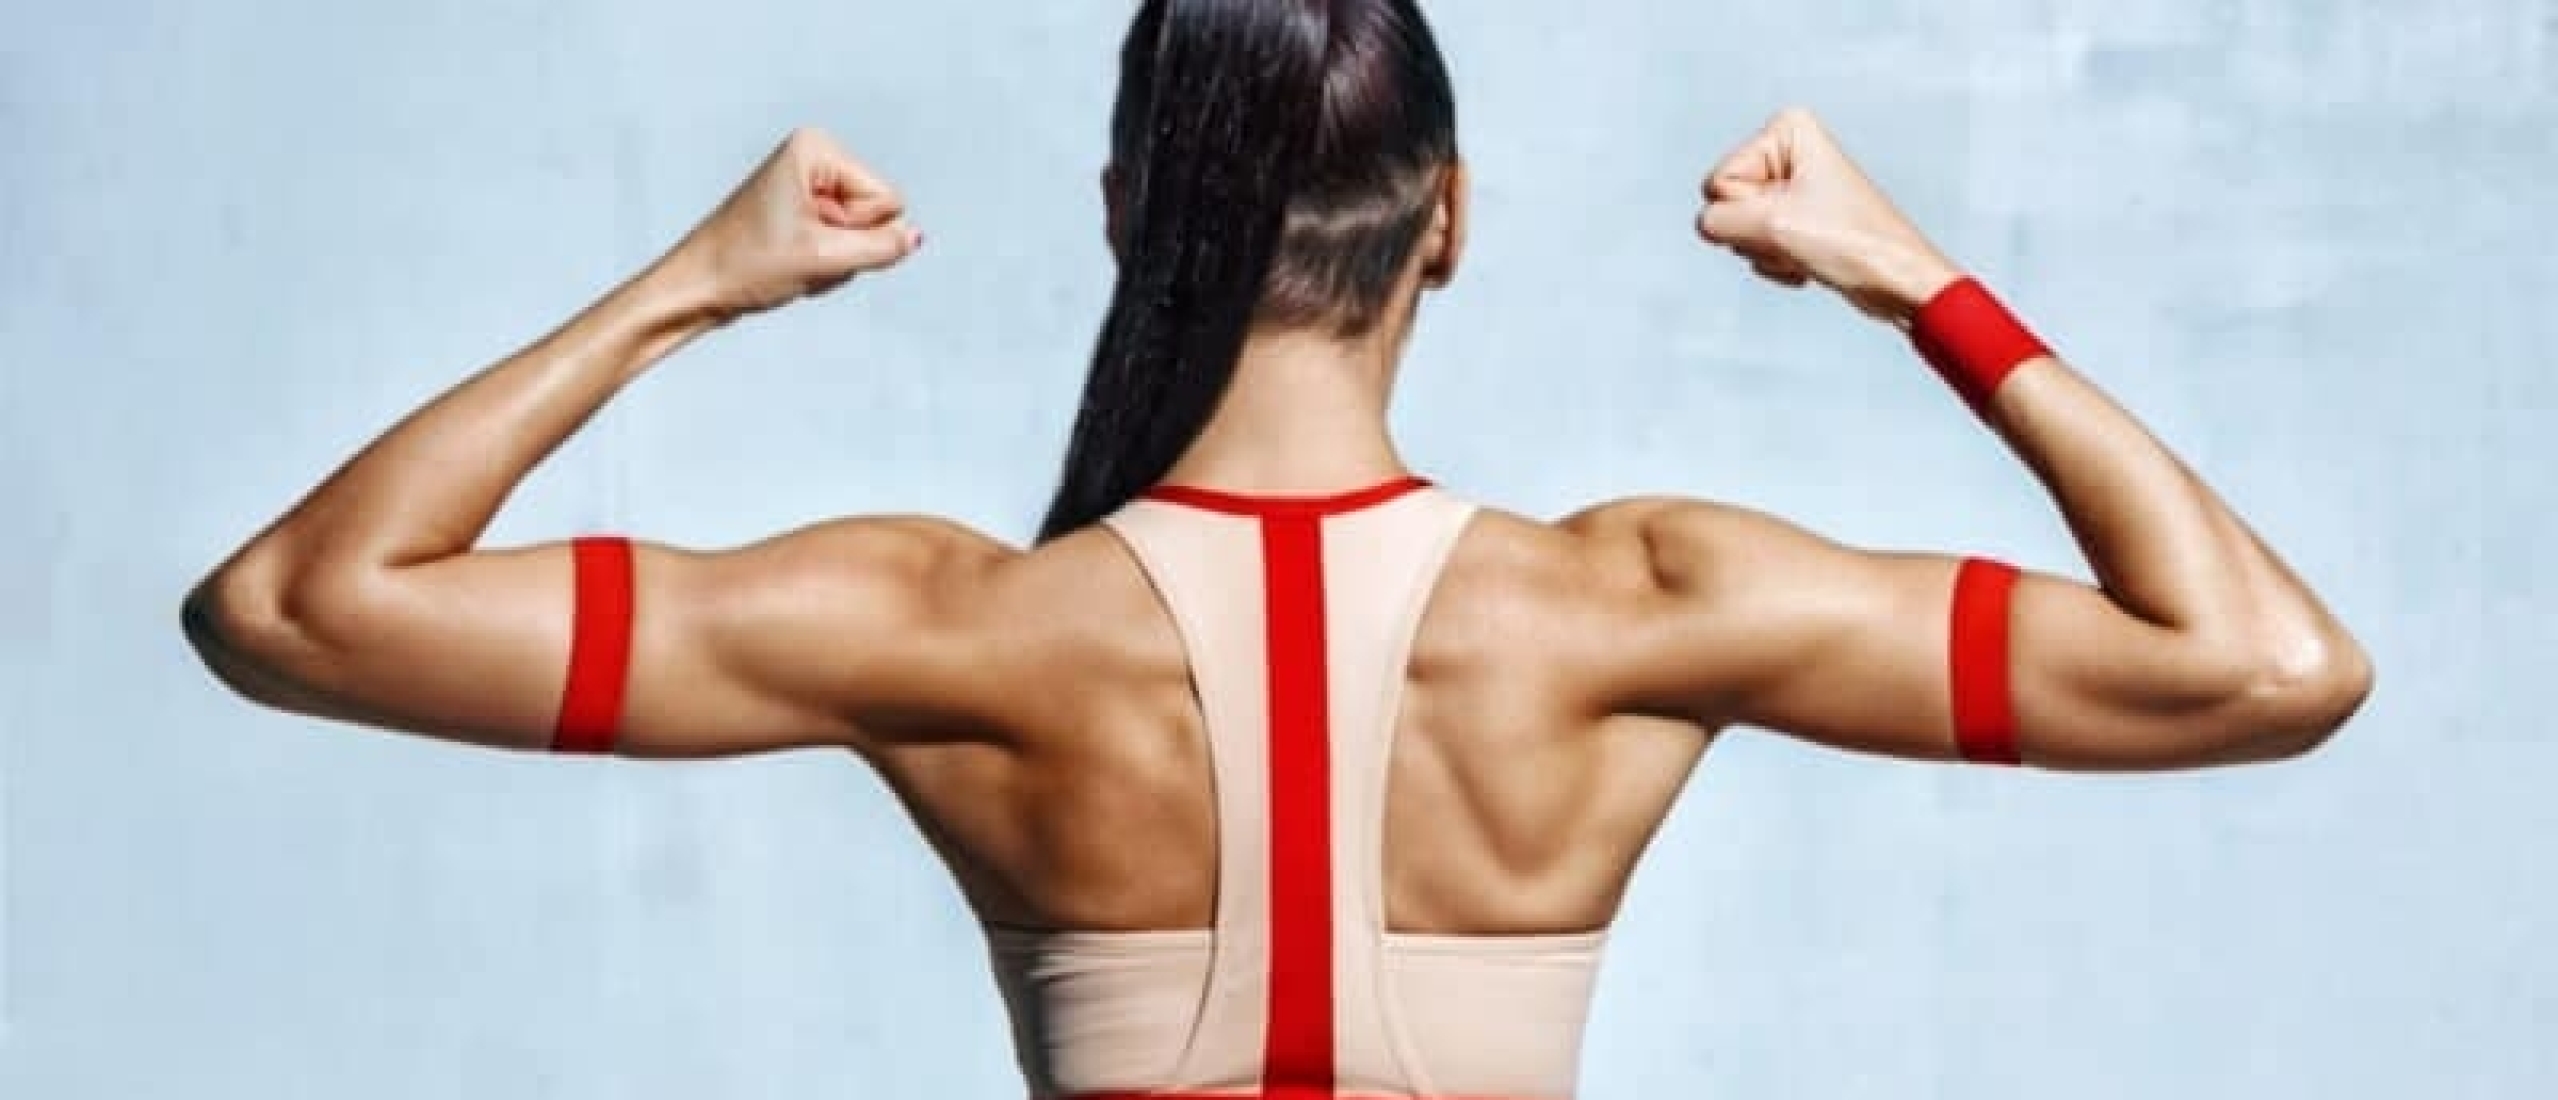 7 beste fitness oefeningen voor een sterke rug